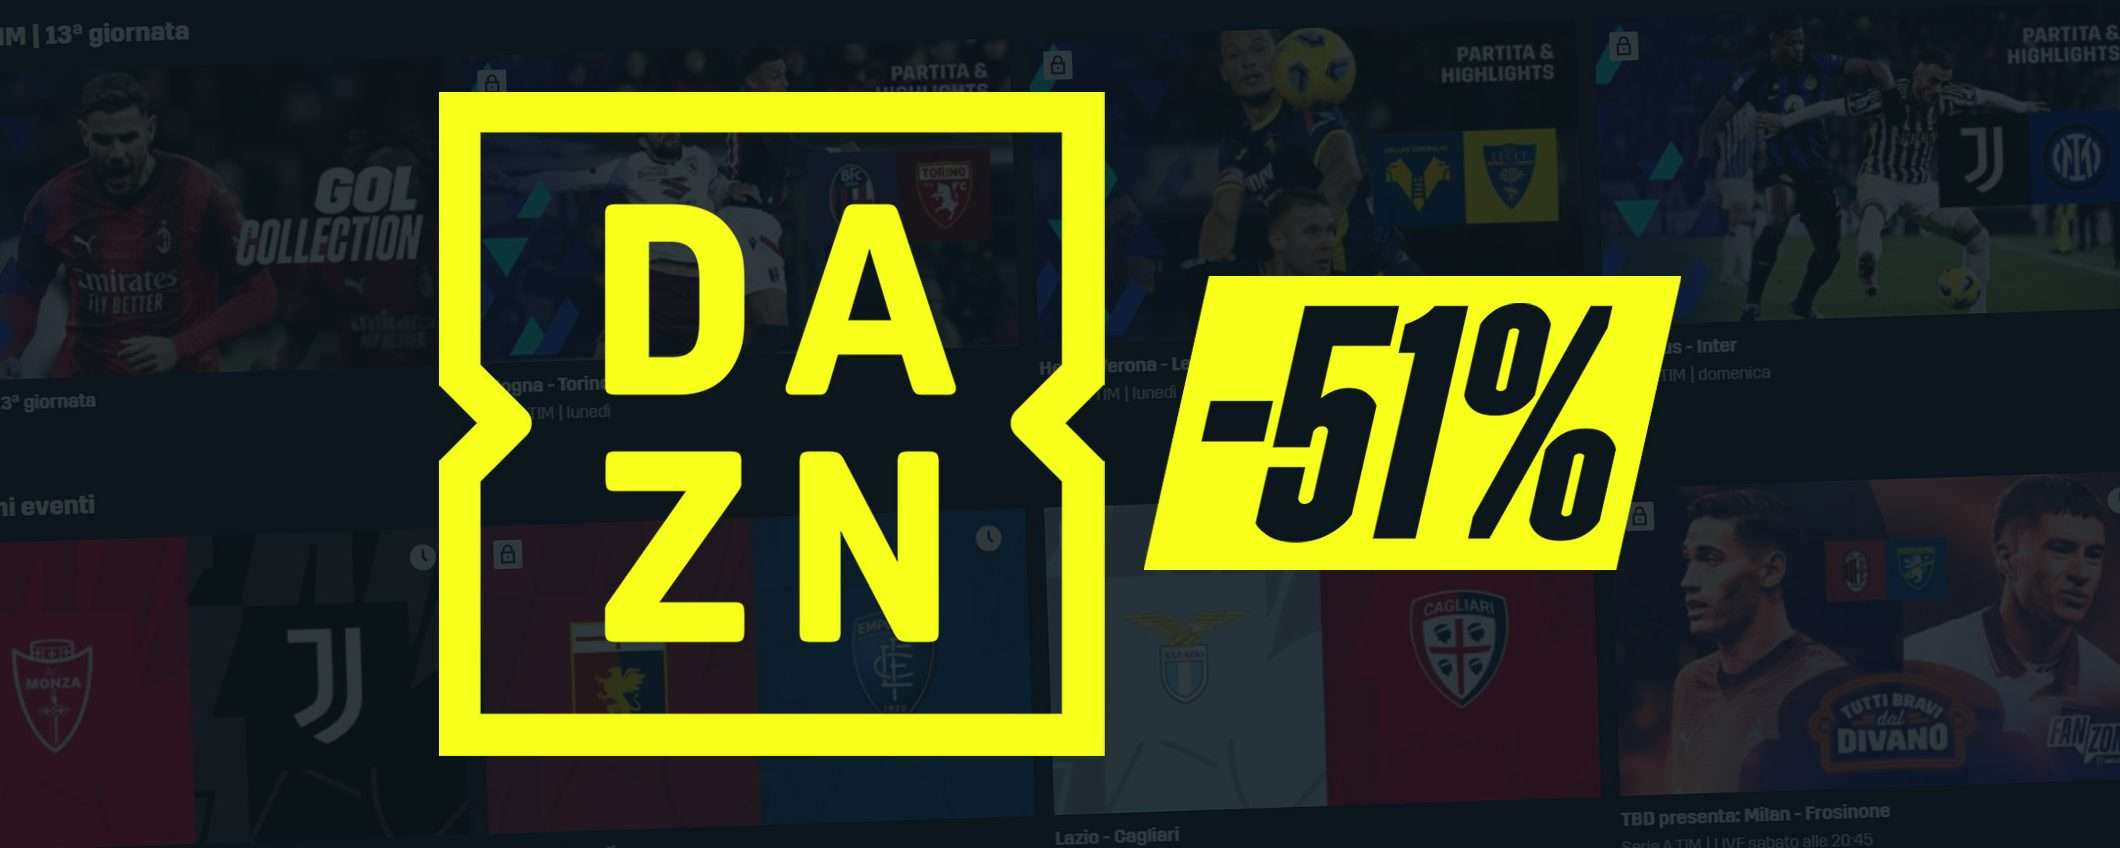 DAZN a metà prezzo con tutta la Serie A in streaming